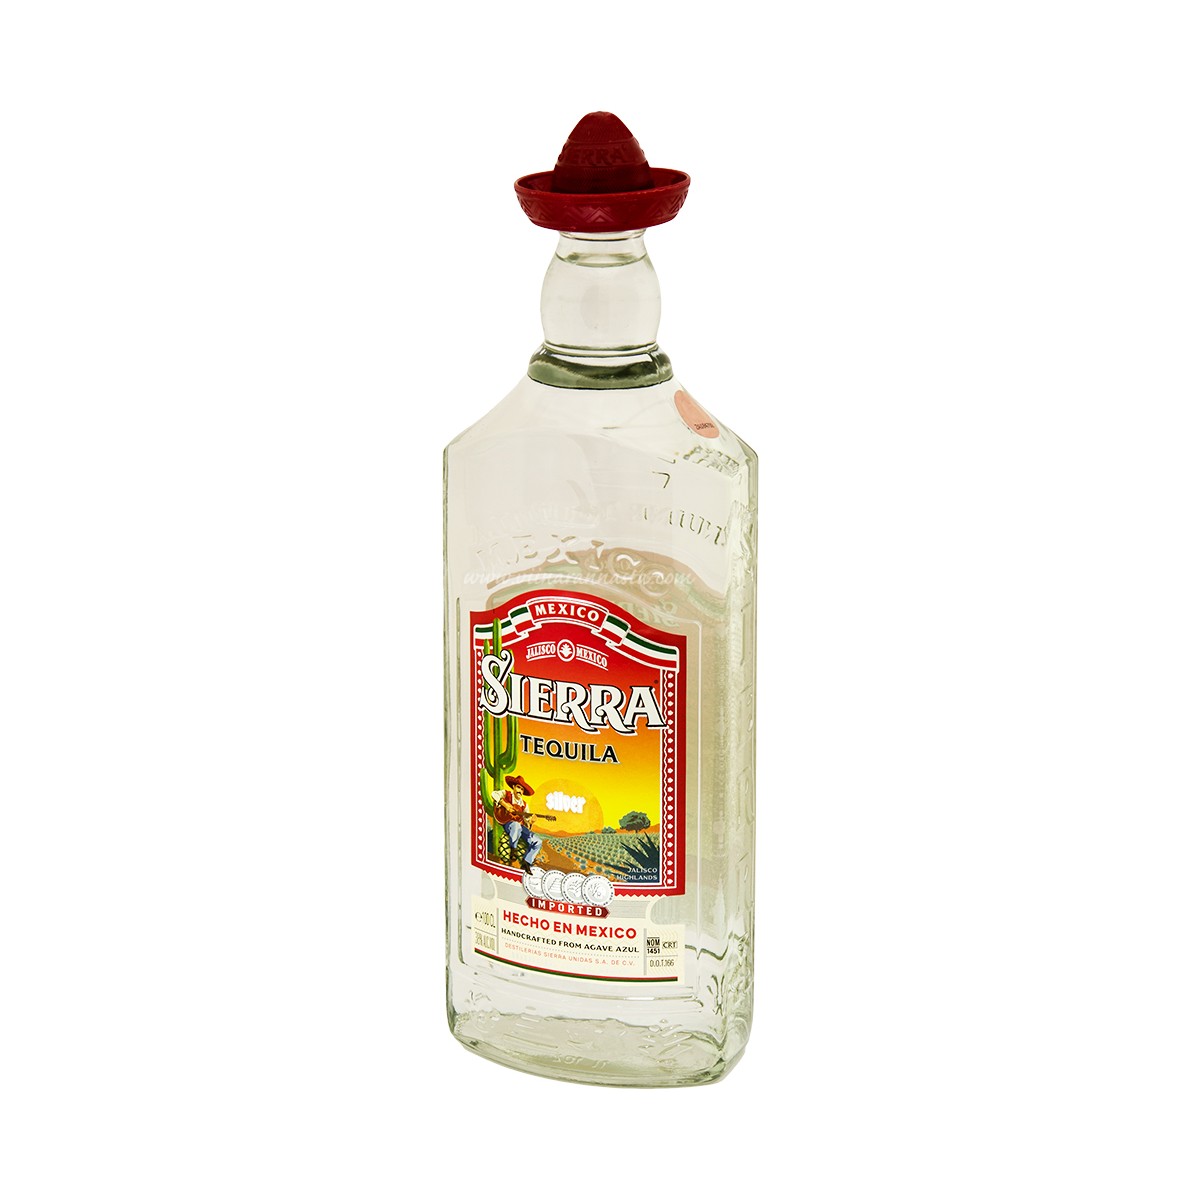 Sierra Tequila Silver 38% 100cl